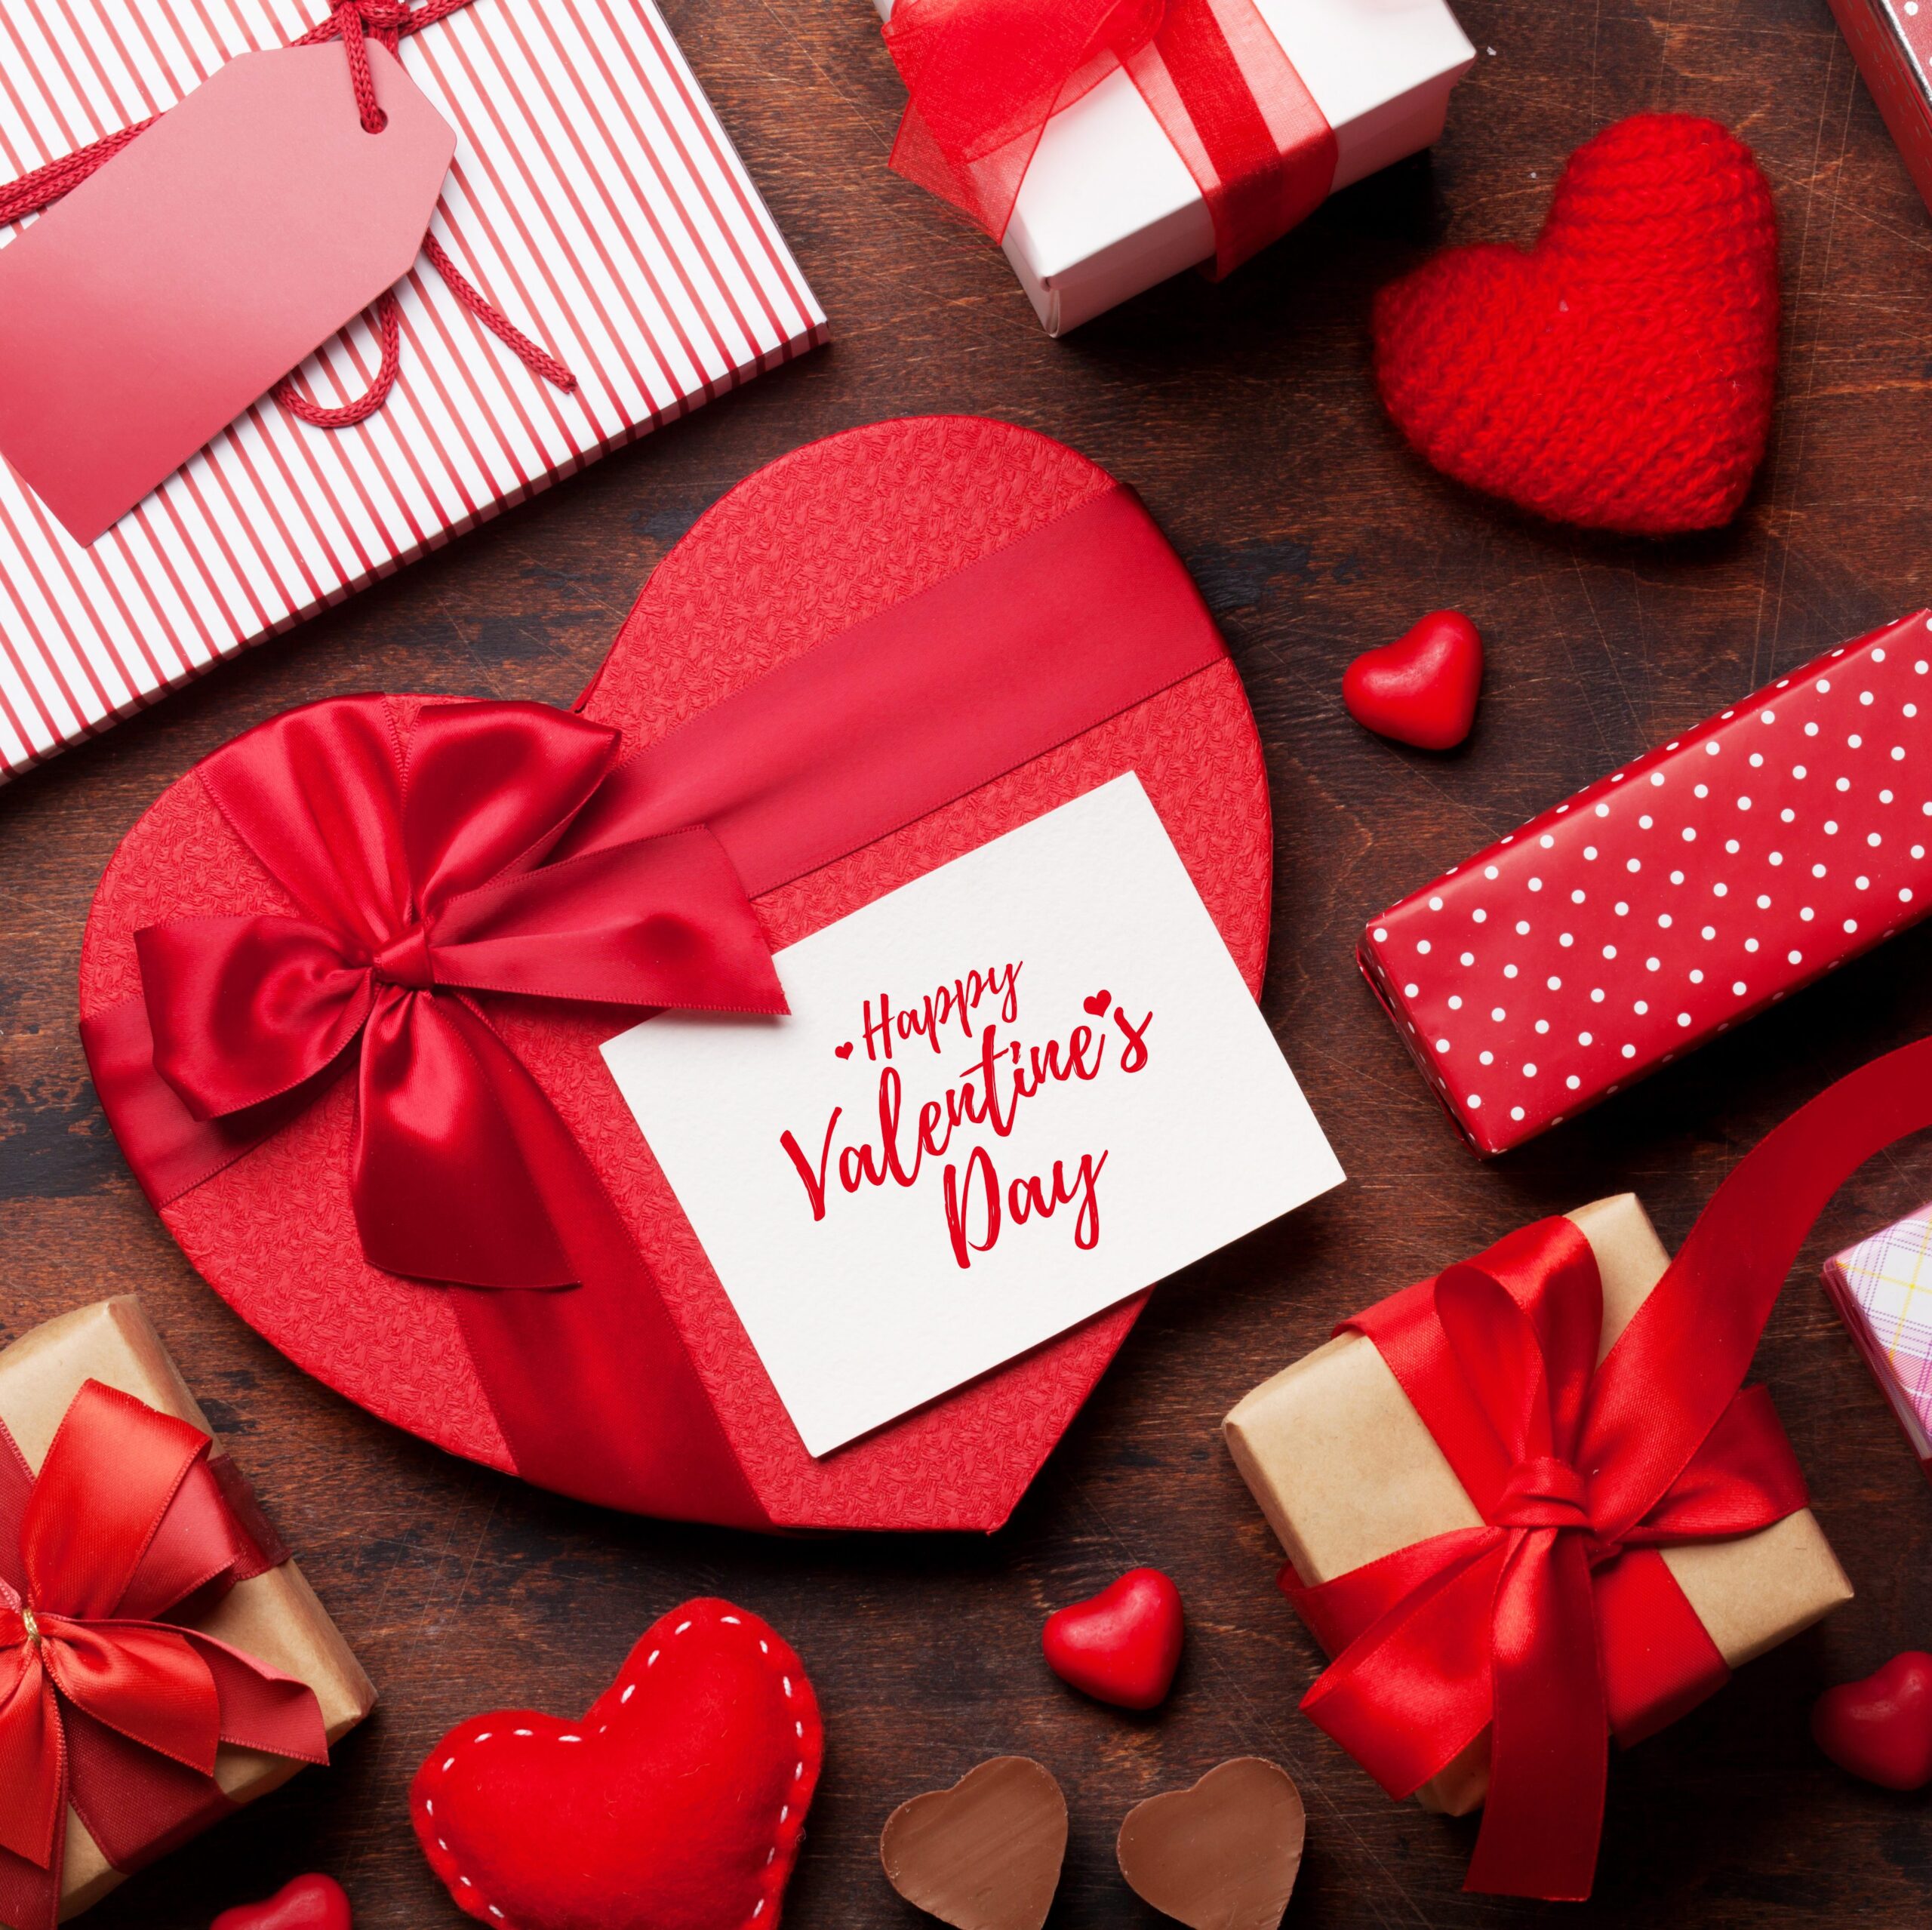 Valentine’s Day Gift Ideals in Amazon